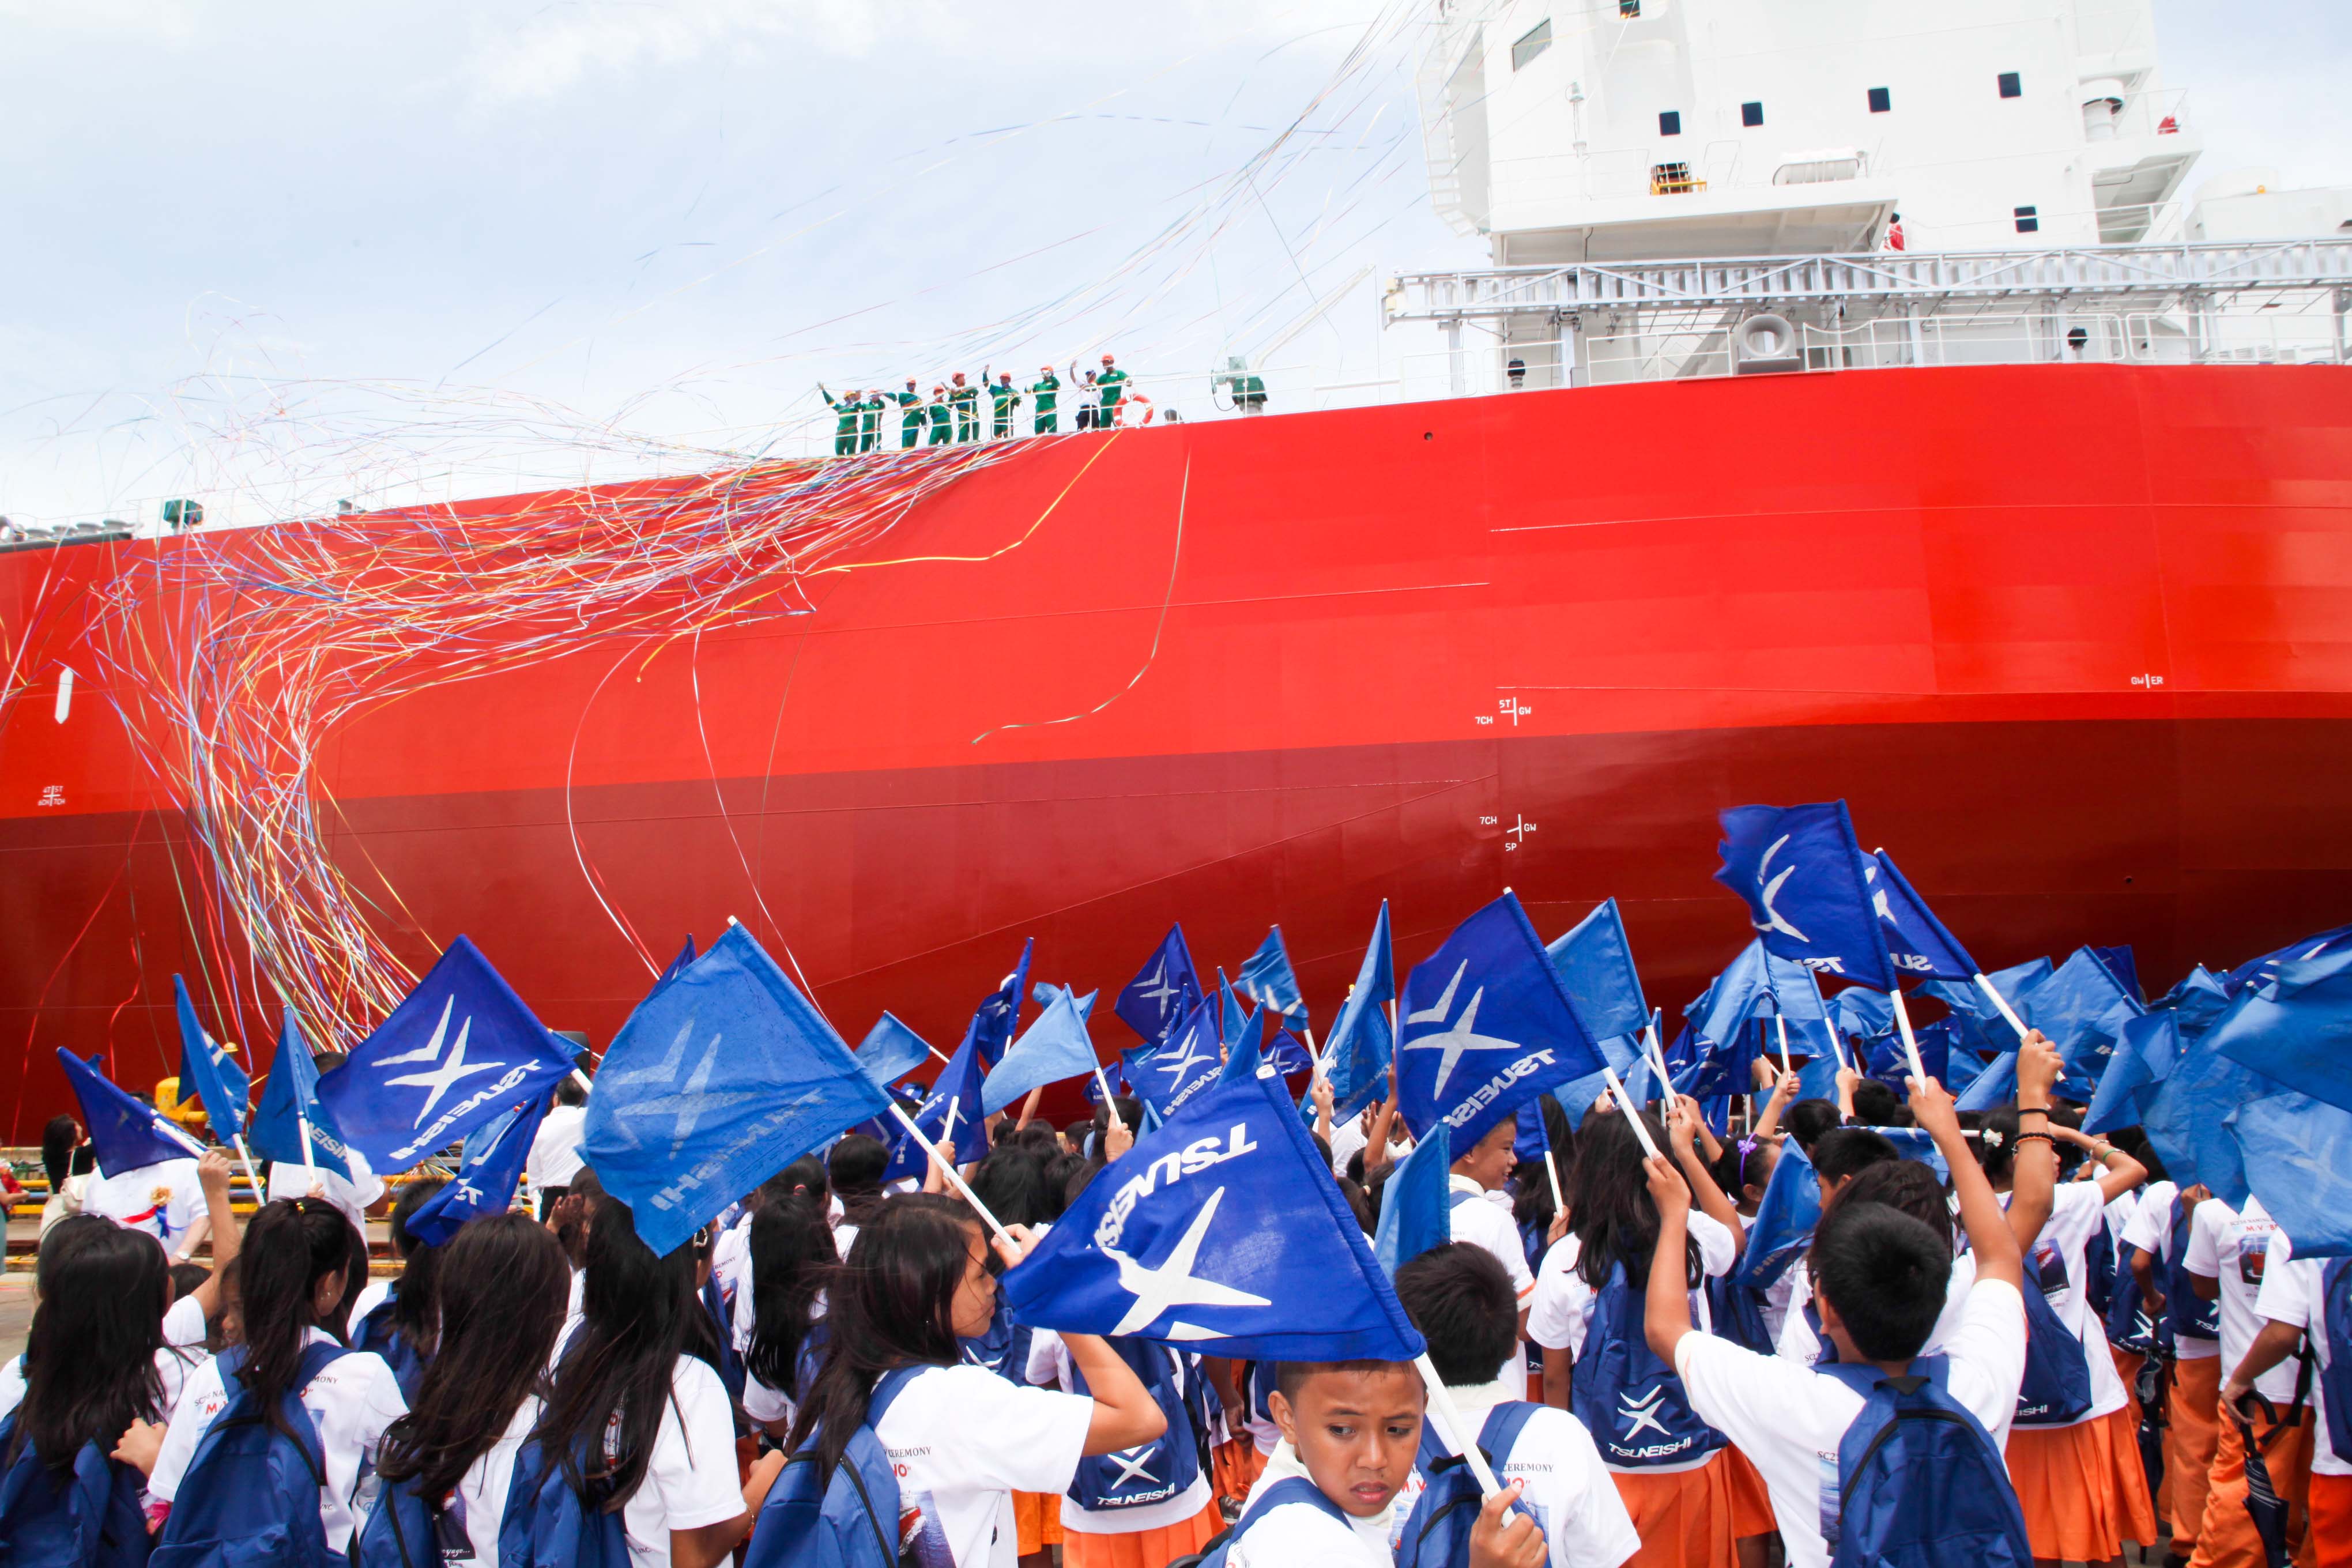 ツネイシ・ヘビー・インダストリーズ（セブ）～1隻目竣工から約18年で建造隻数200隻超えを達成～フィリピン造船業の成長に貢献